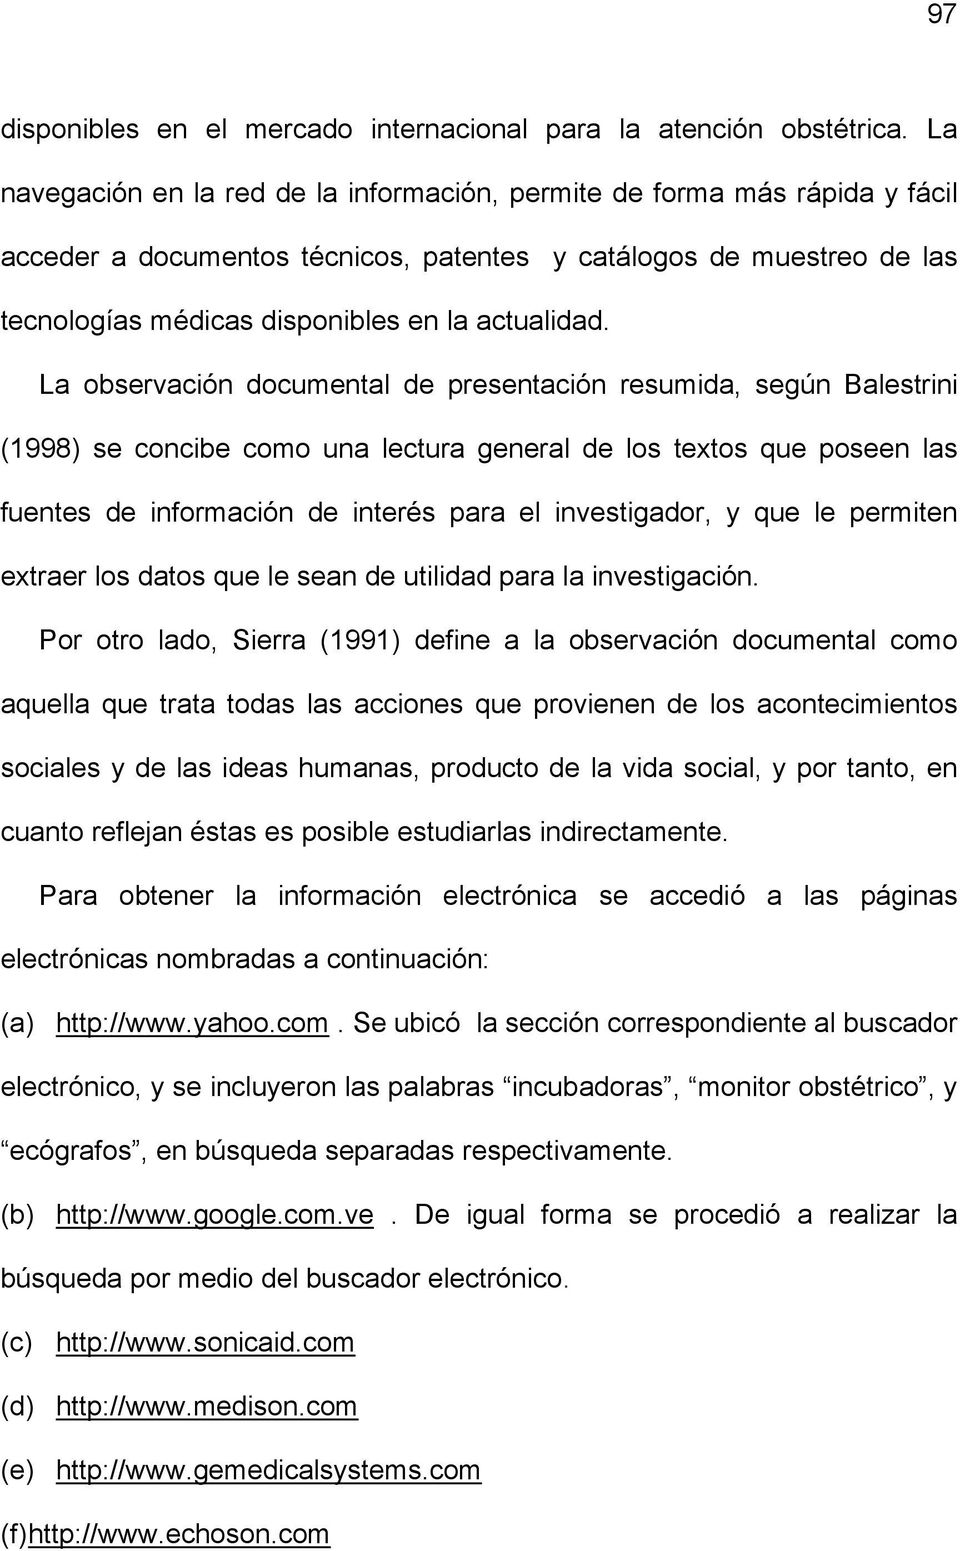 La observación documental de presentación resumida, según Balestrini (1998) se concibe como una lectura general de los textos que poseen las fuentes de información de interés para el investigador, y